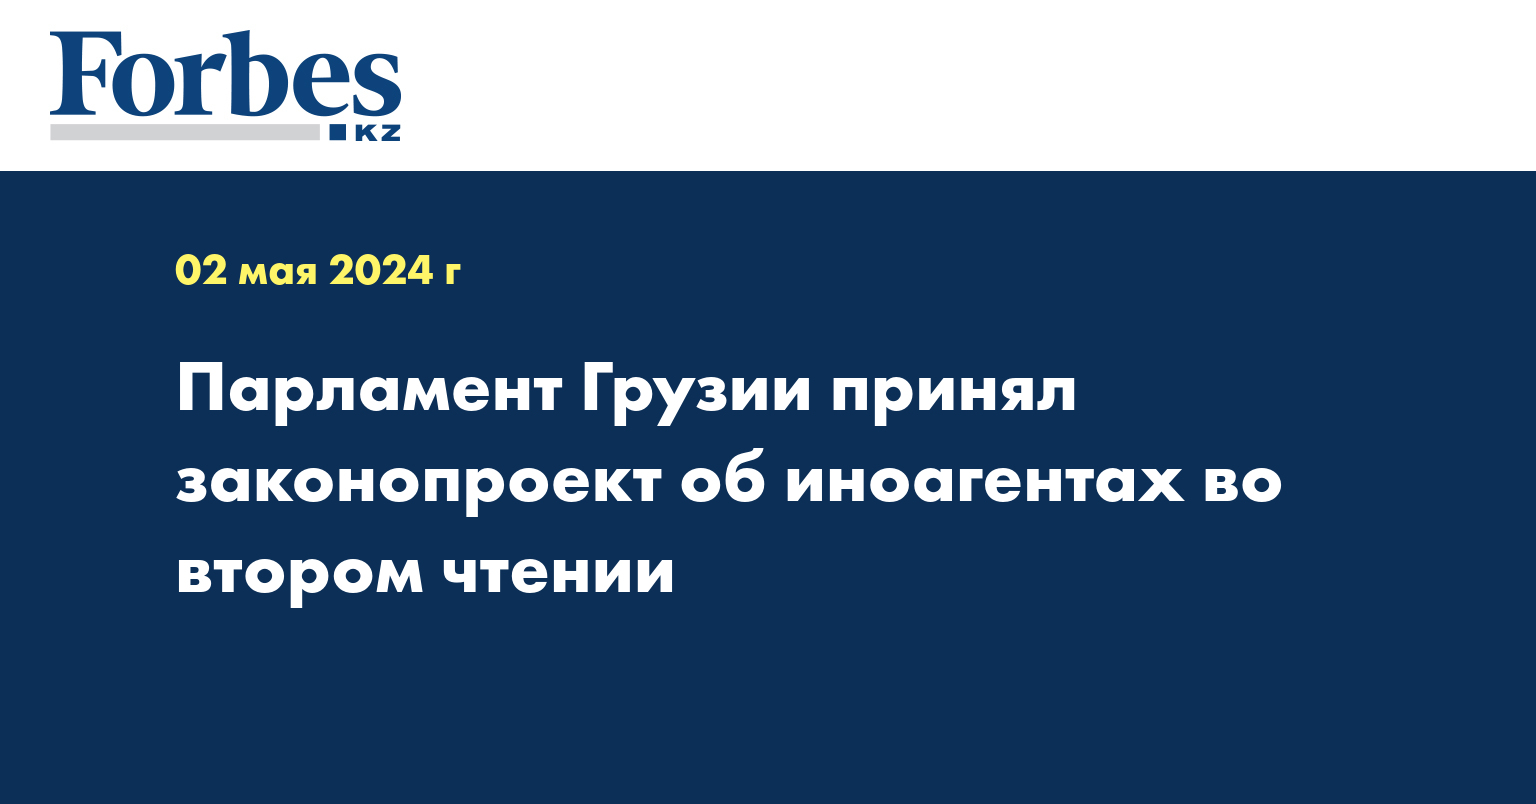 Парламент Грузии принял законопроект об иноагентах во втором чтении